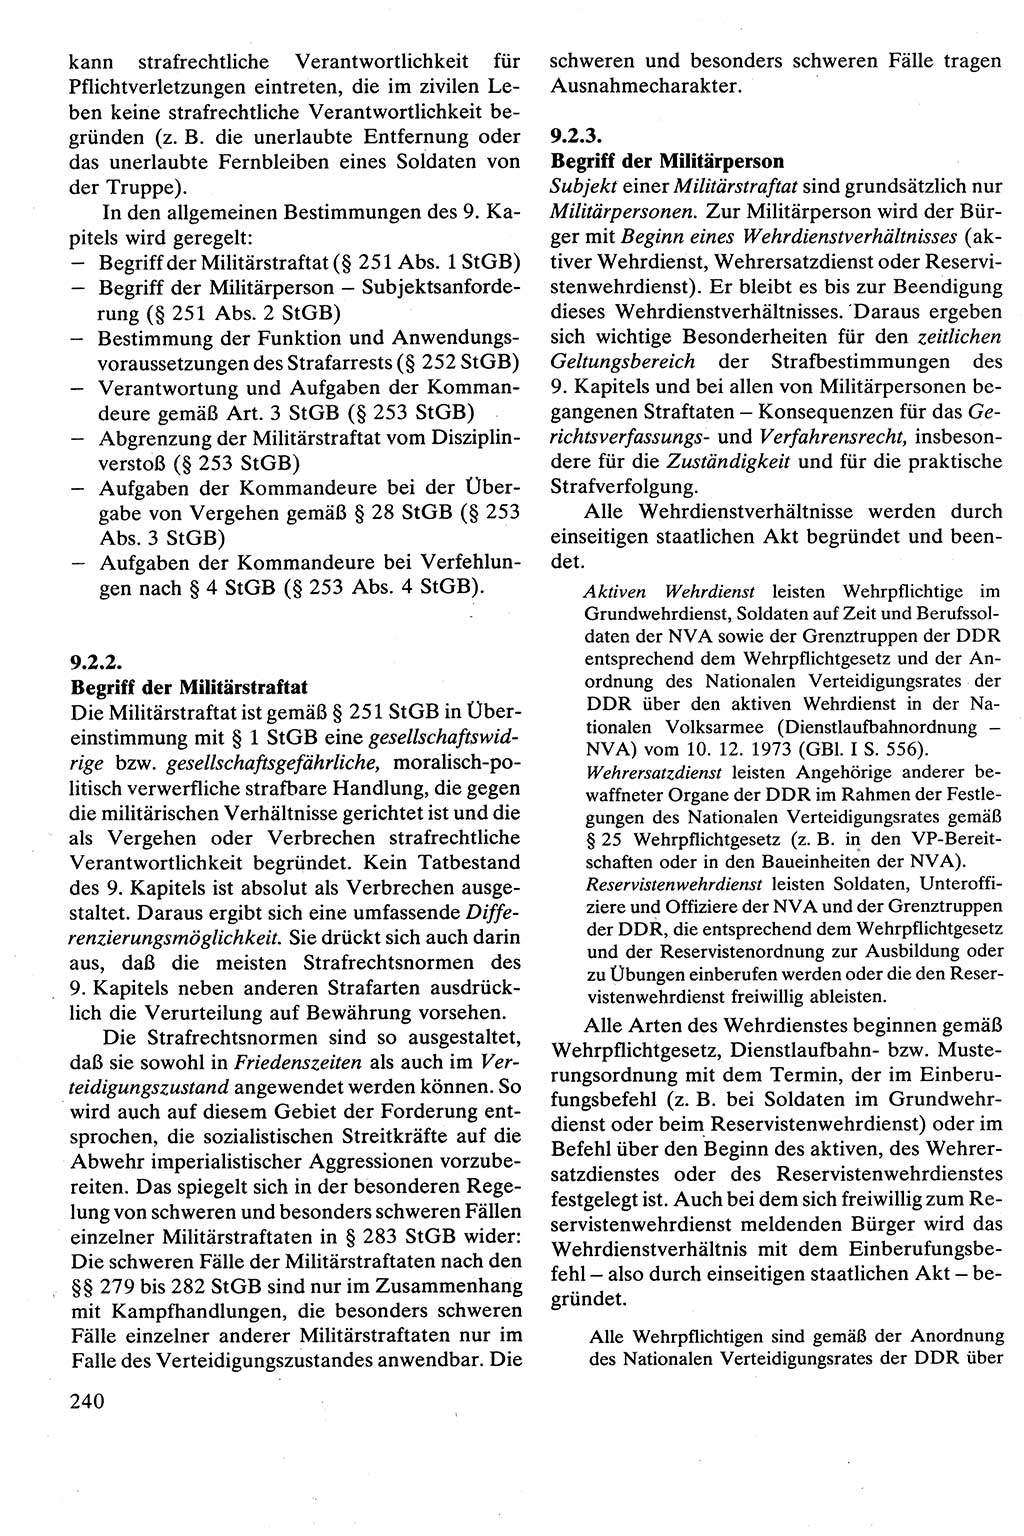 Strafrecht [Deutsche Demokratische Republik (DDR)], Besonderer Teil, Lehrbuch 1981, Seite 240 (Strafr. DDR BT Lb. 1981, S. 240)